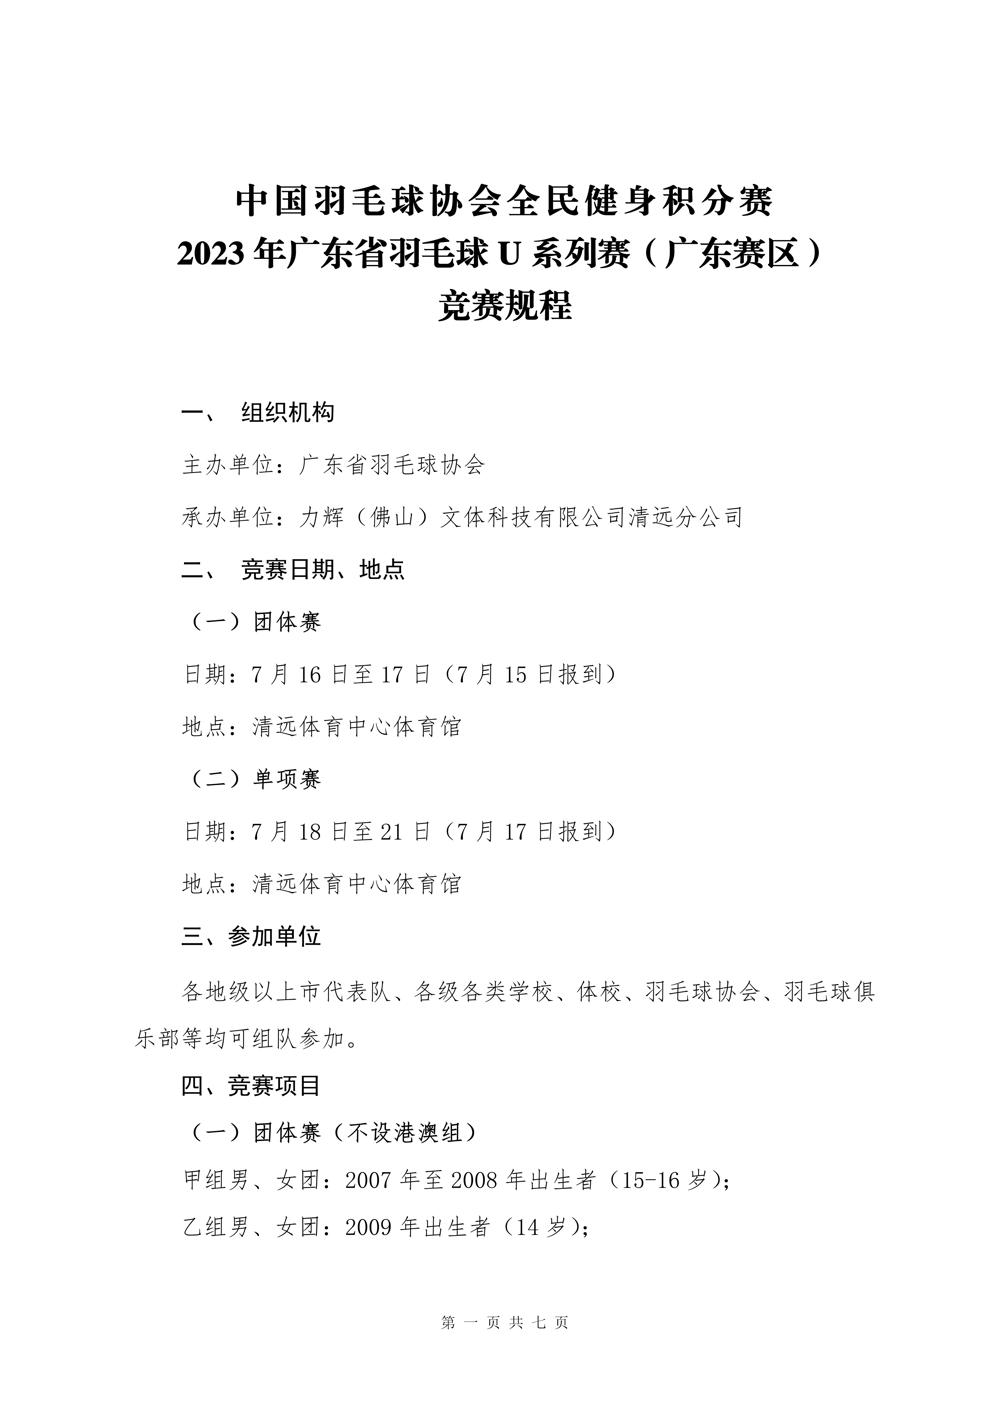 2023年广东省羽毛球U系列赛（广东赛区）竞赛规程-0607更新_01